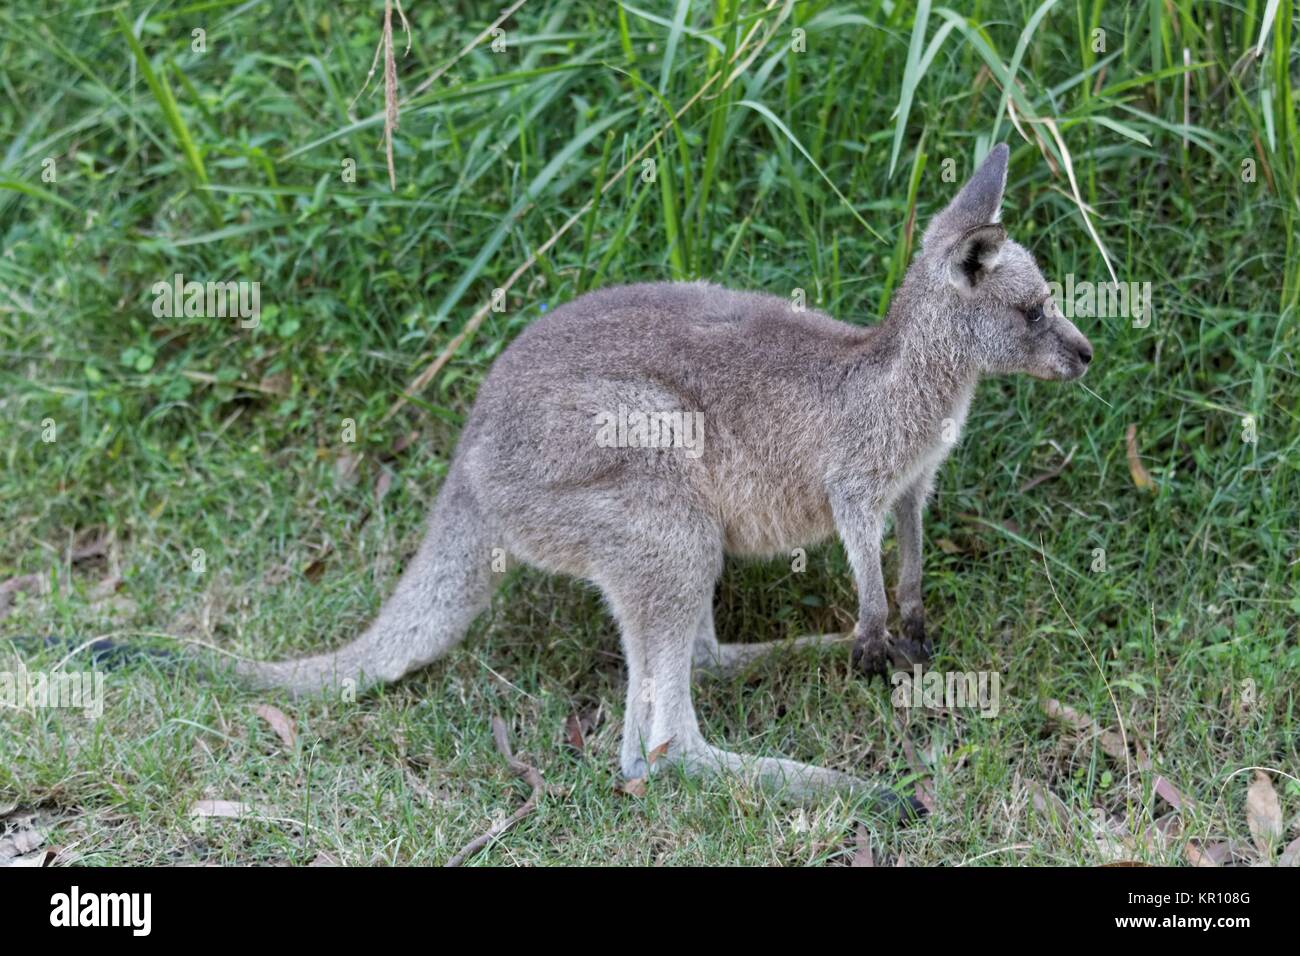 young eastern grey kangaroo Stock Photo